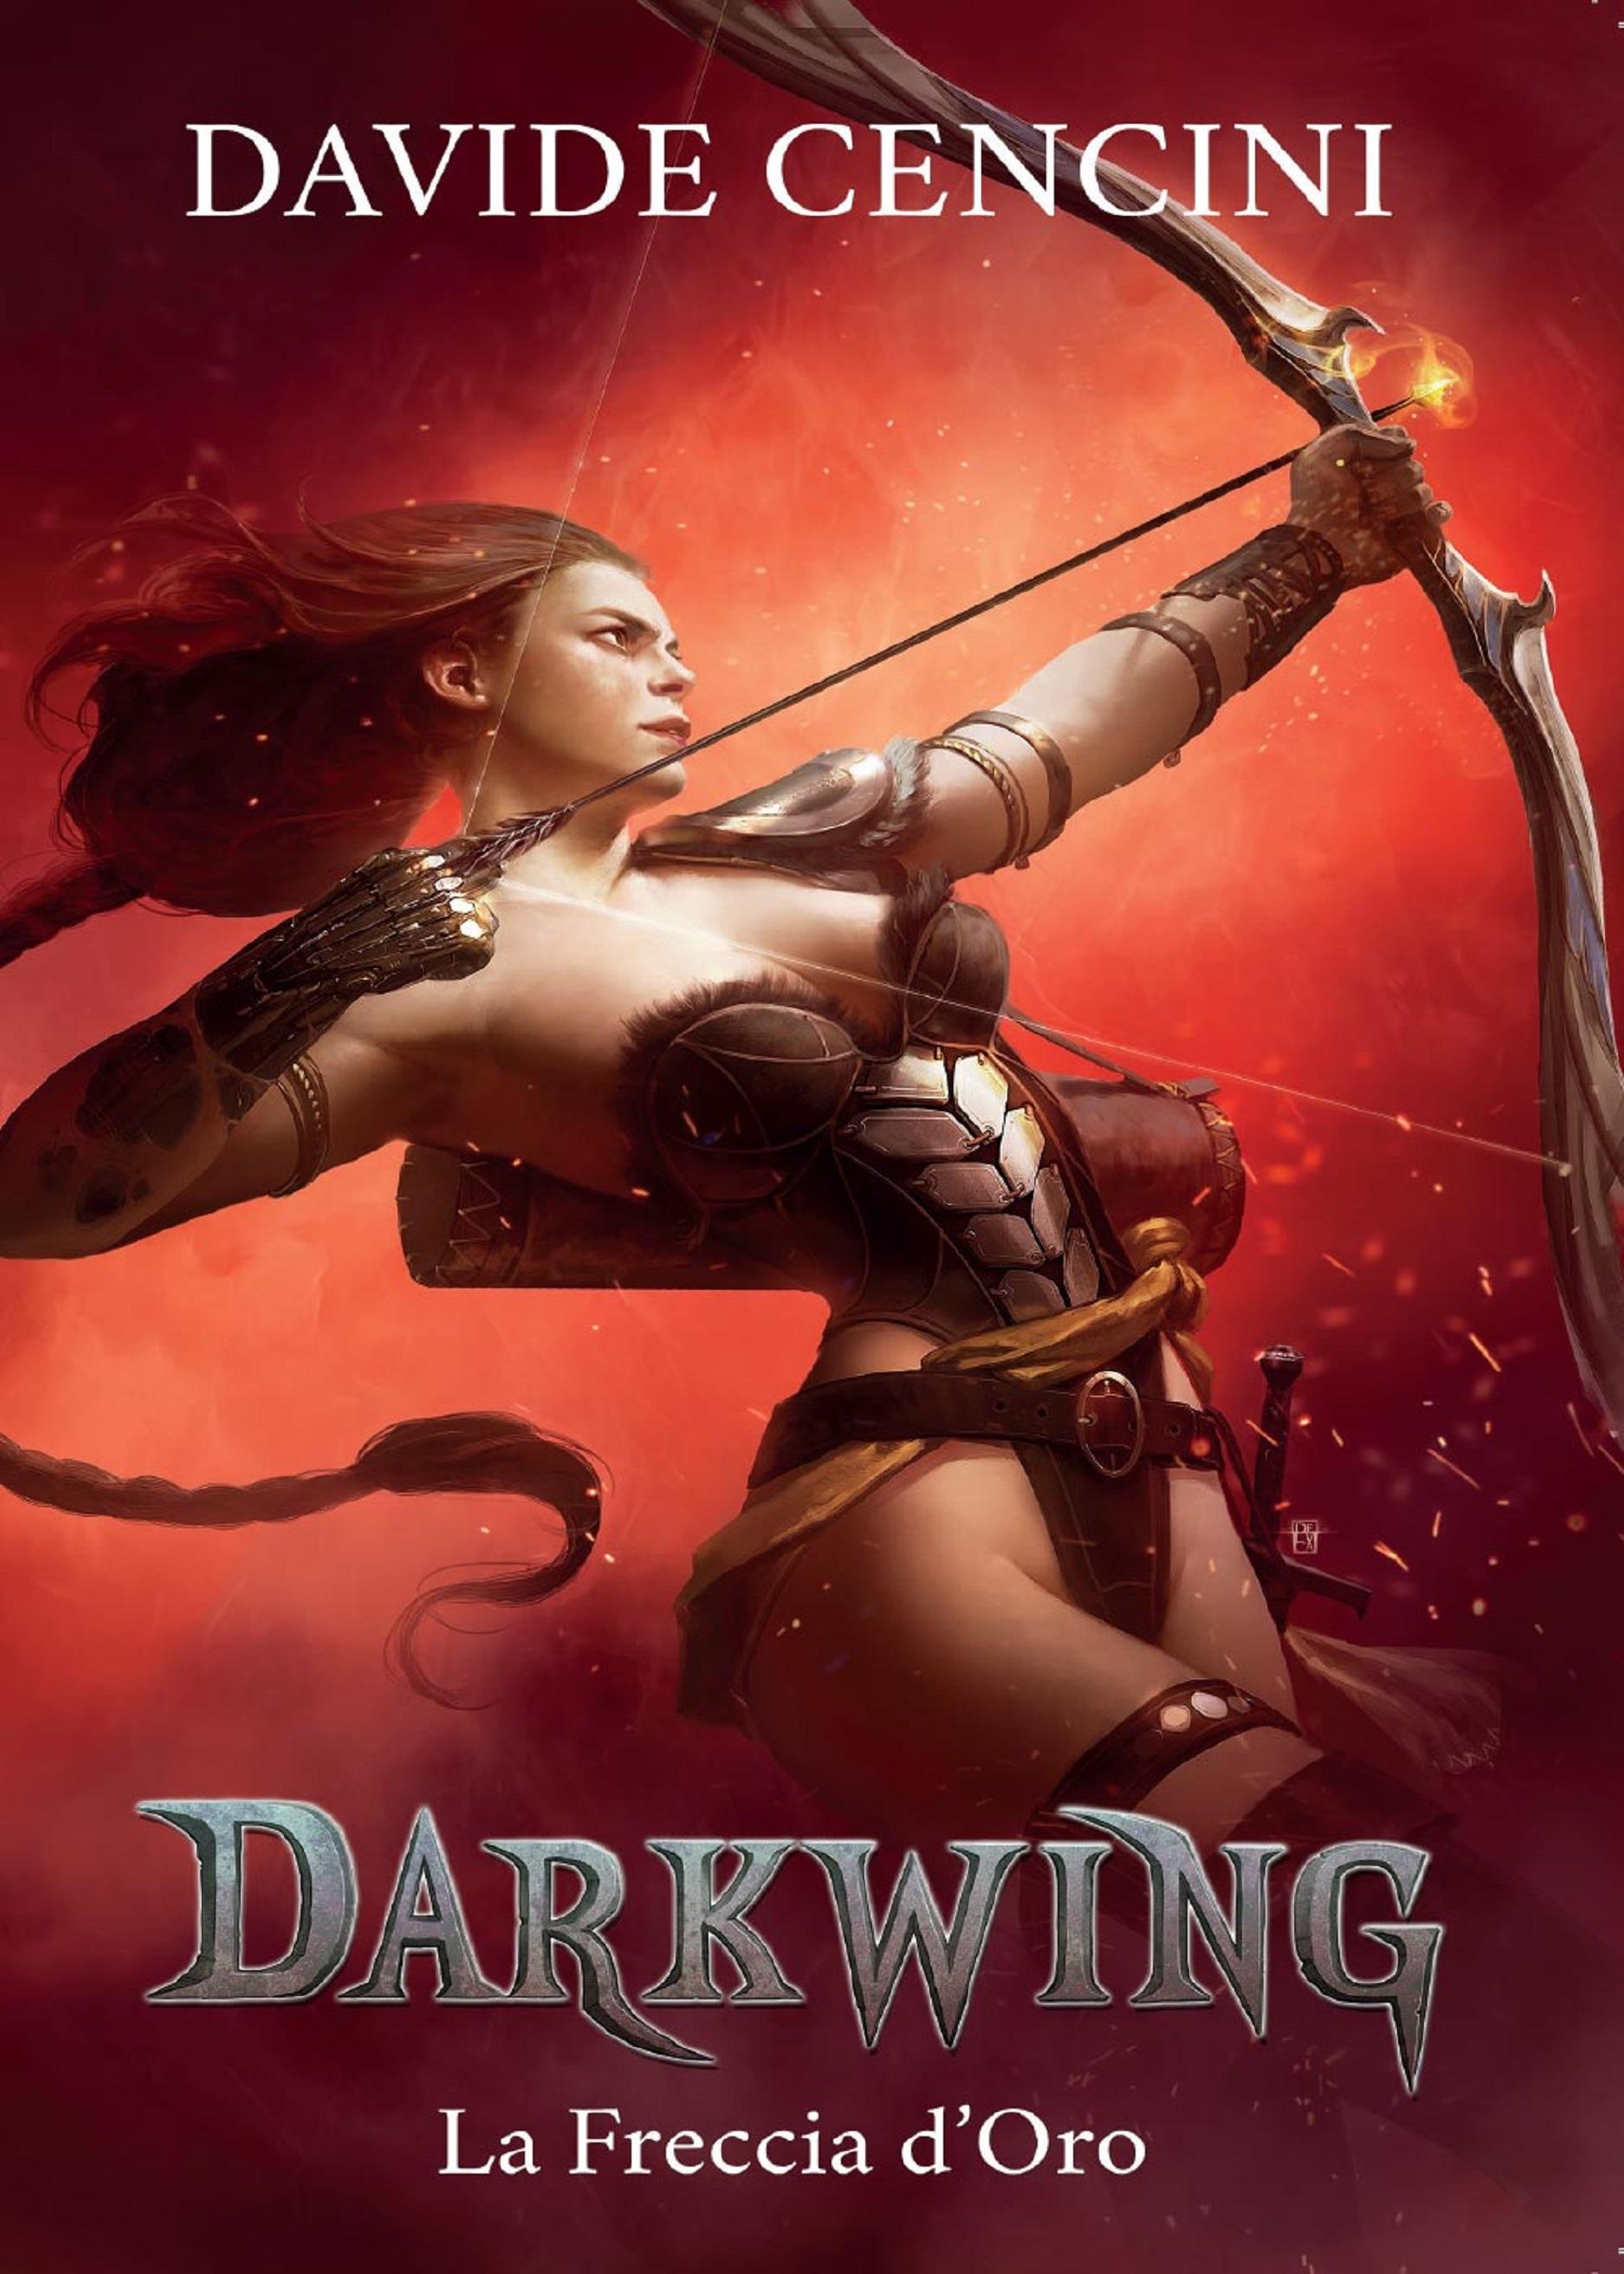 Darkwing vol. 3 - La Freccia d'Oro